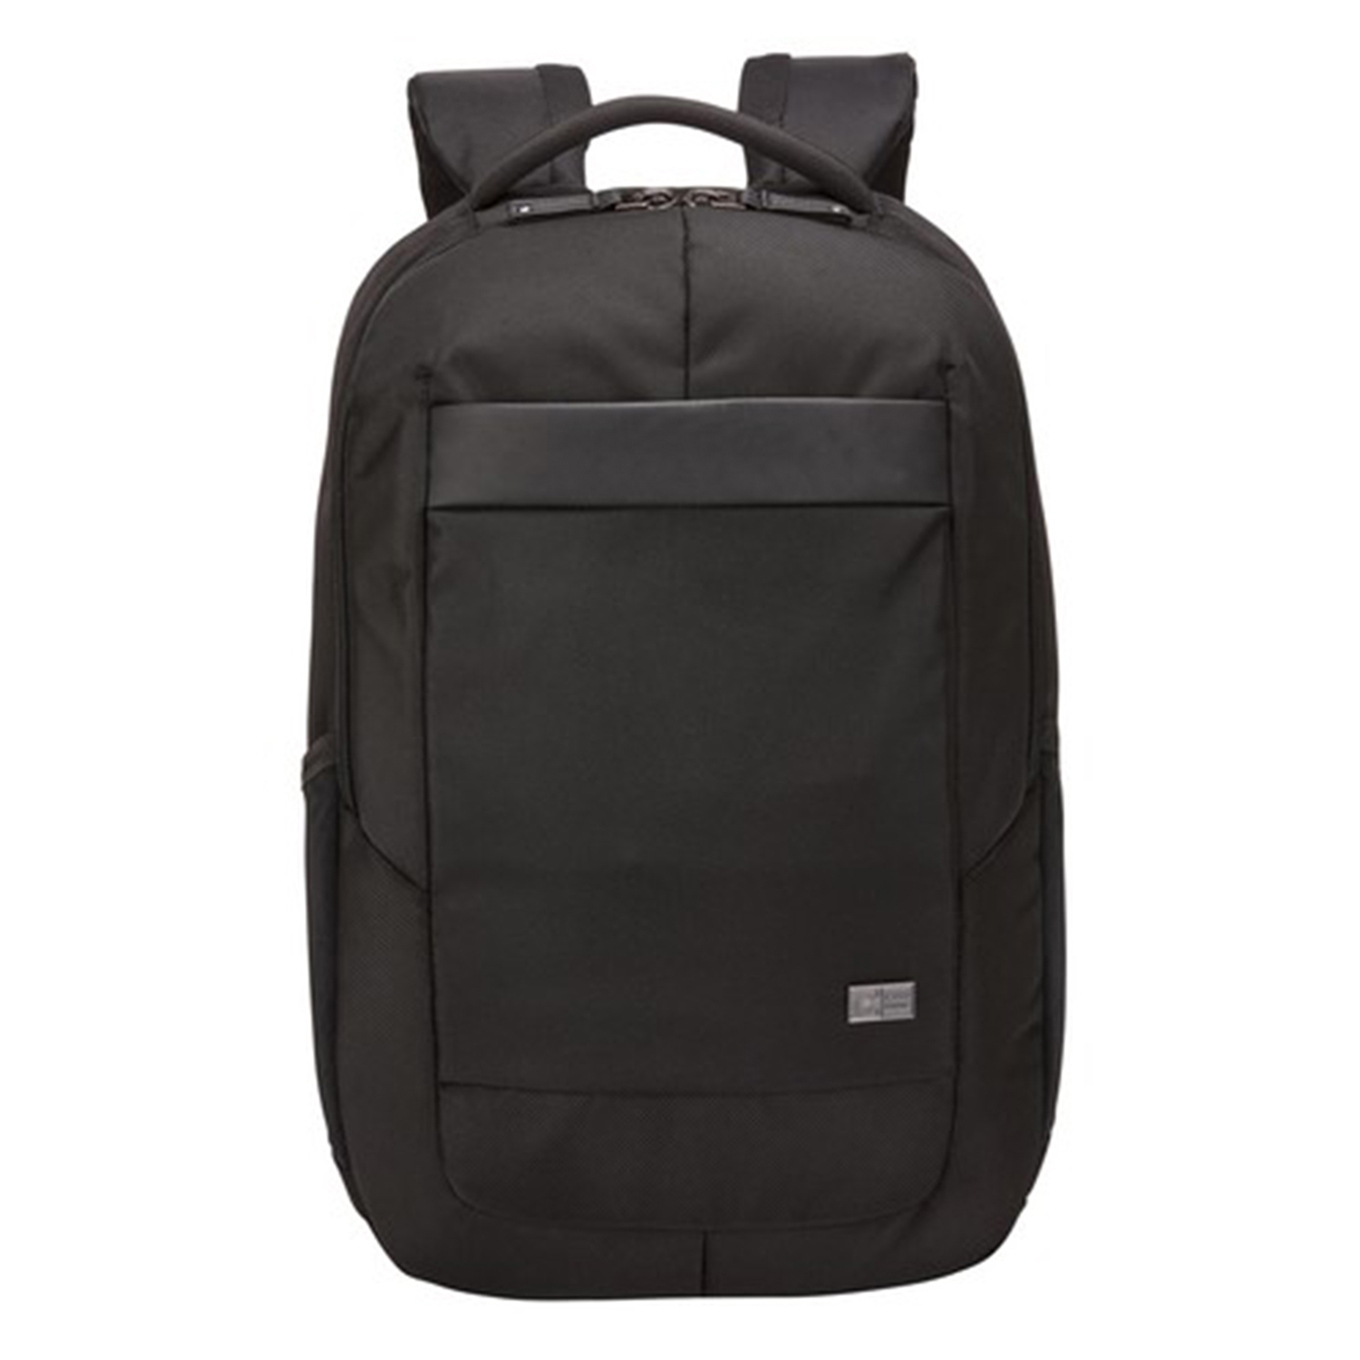 Case Logic Notion 14 inch Laptop Backpack black backpack